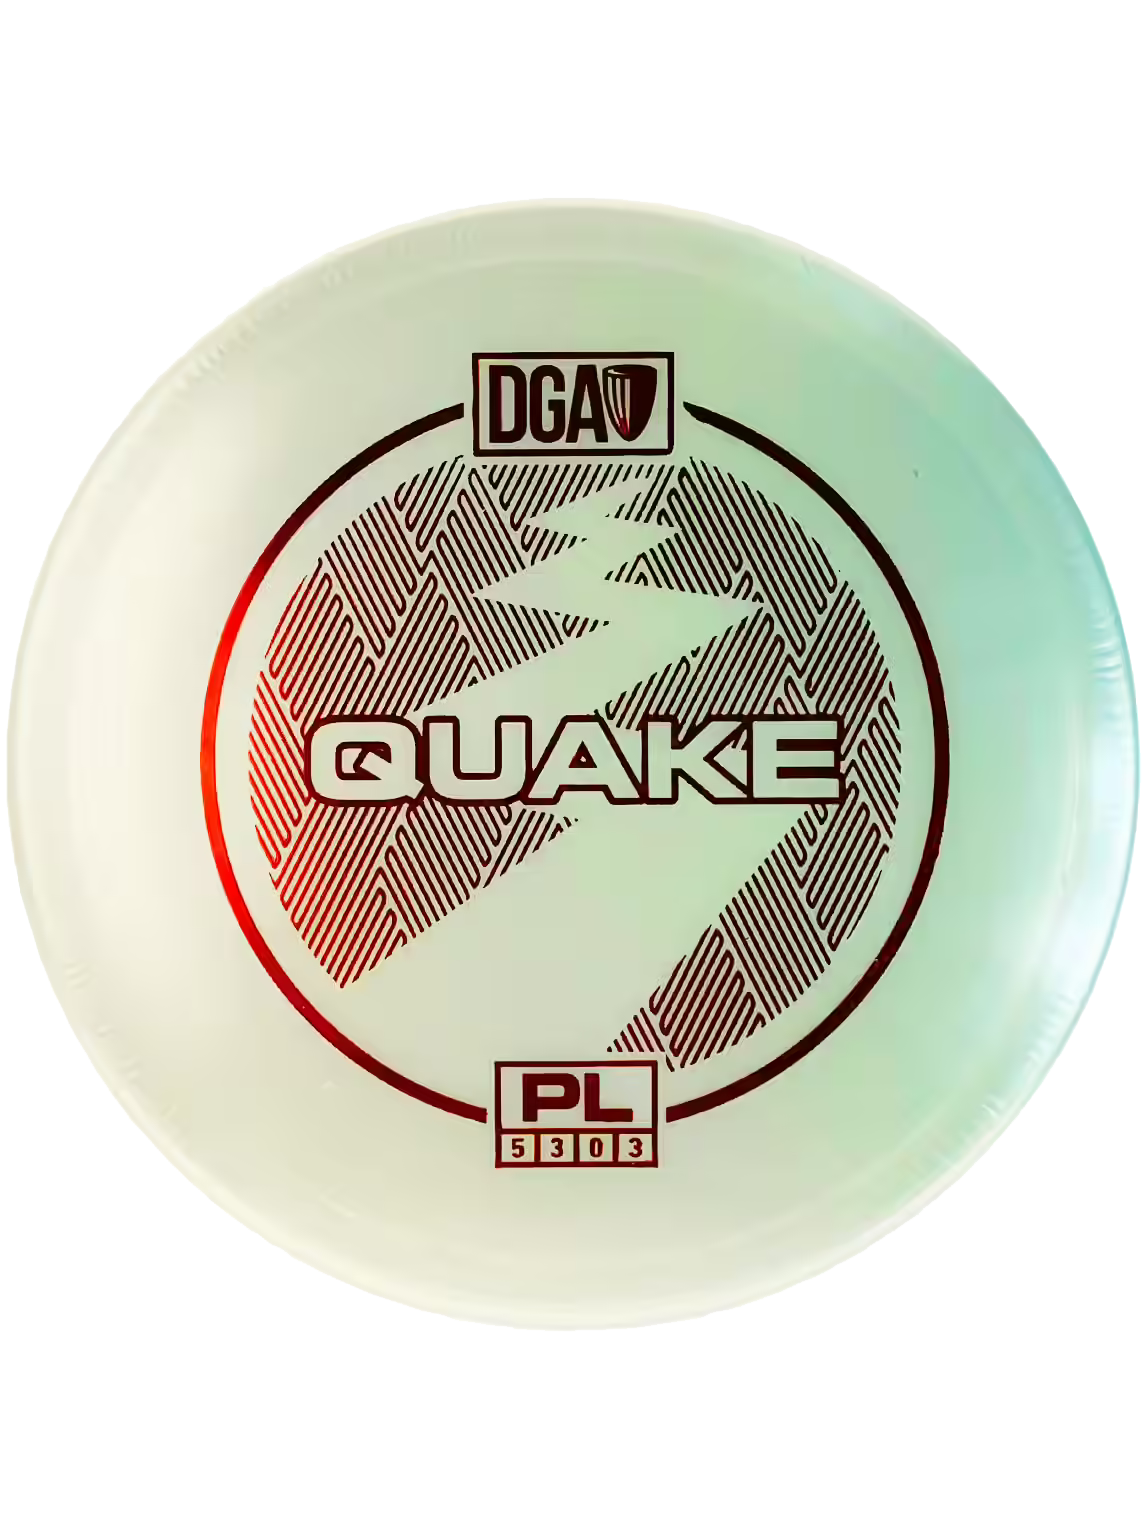 Product Image for DGA Proline Quake